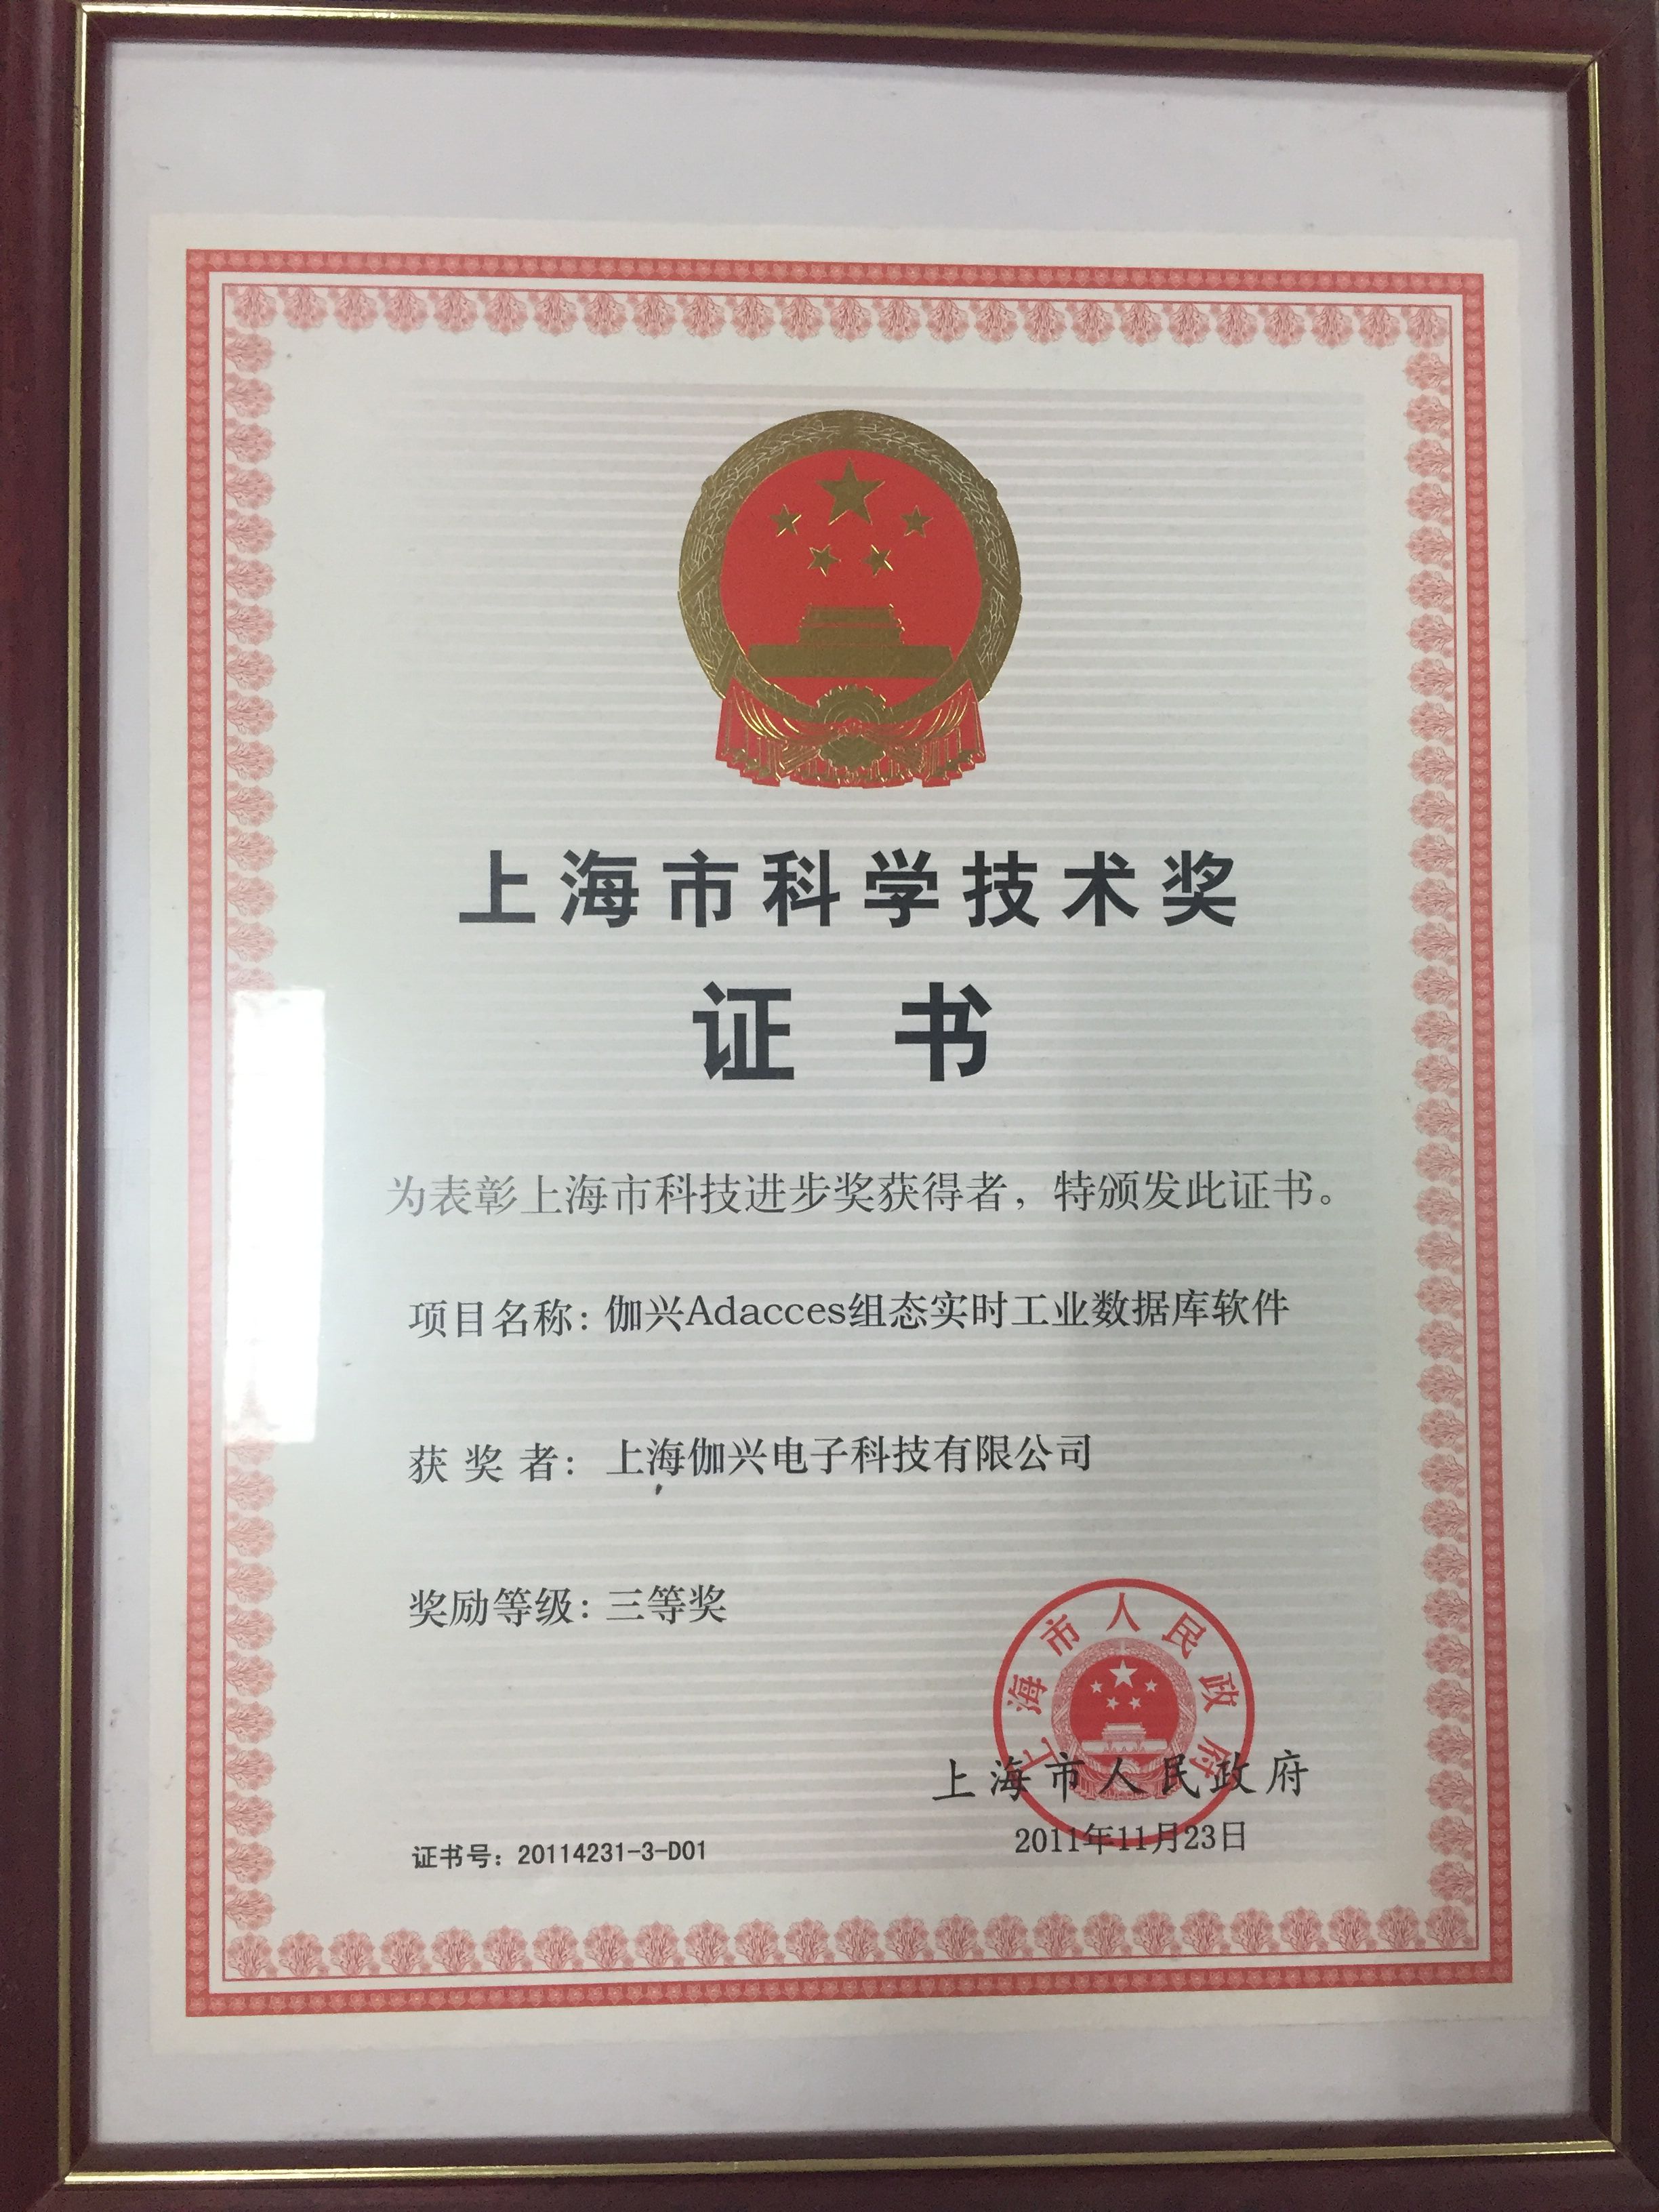 上海科學技術獎